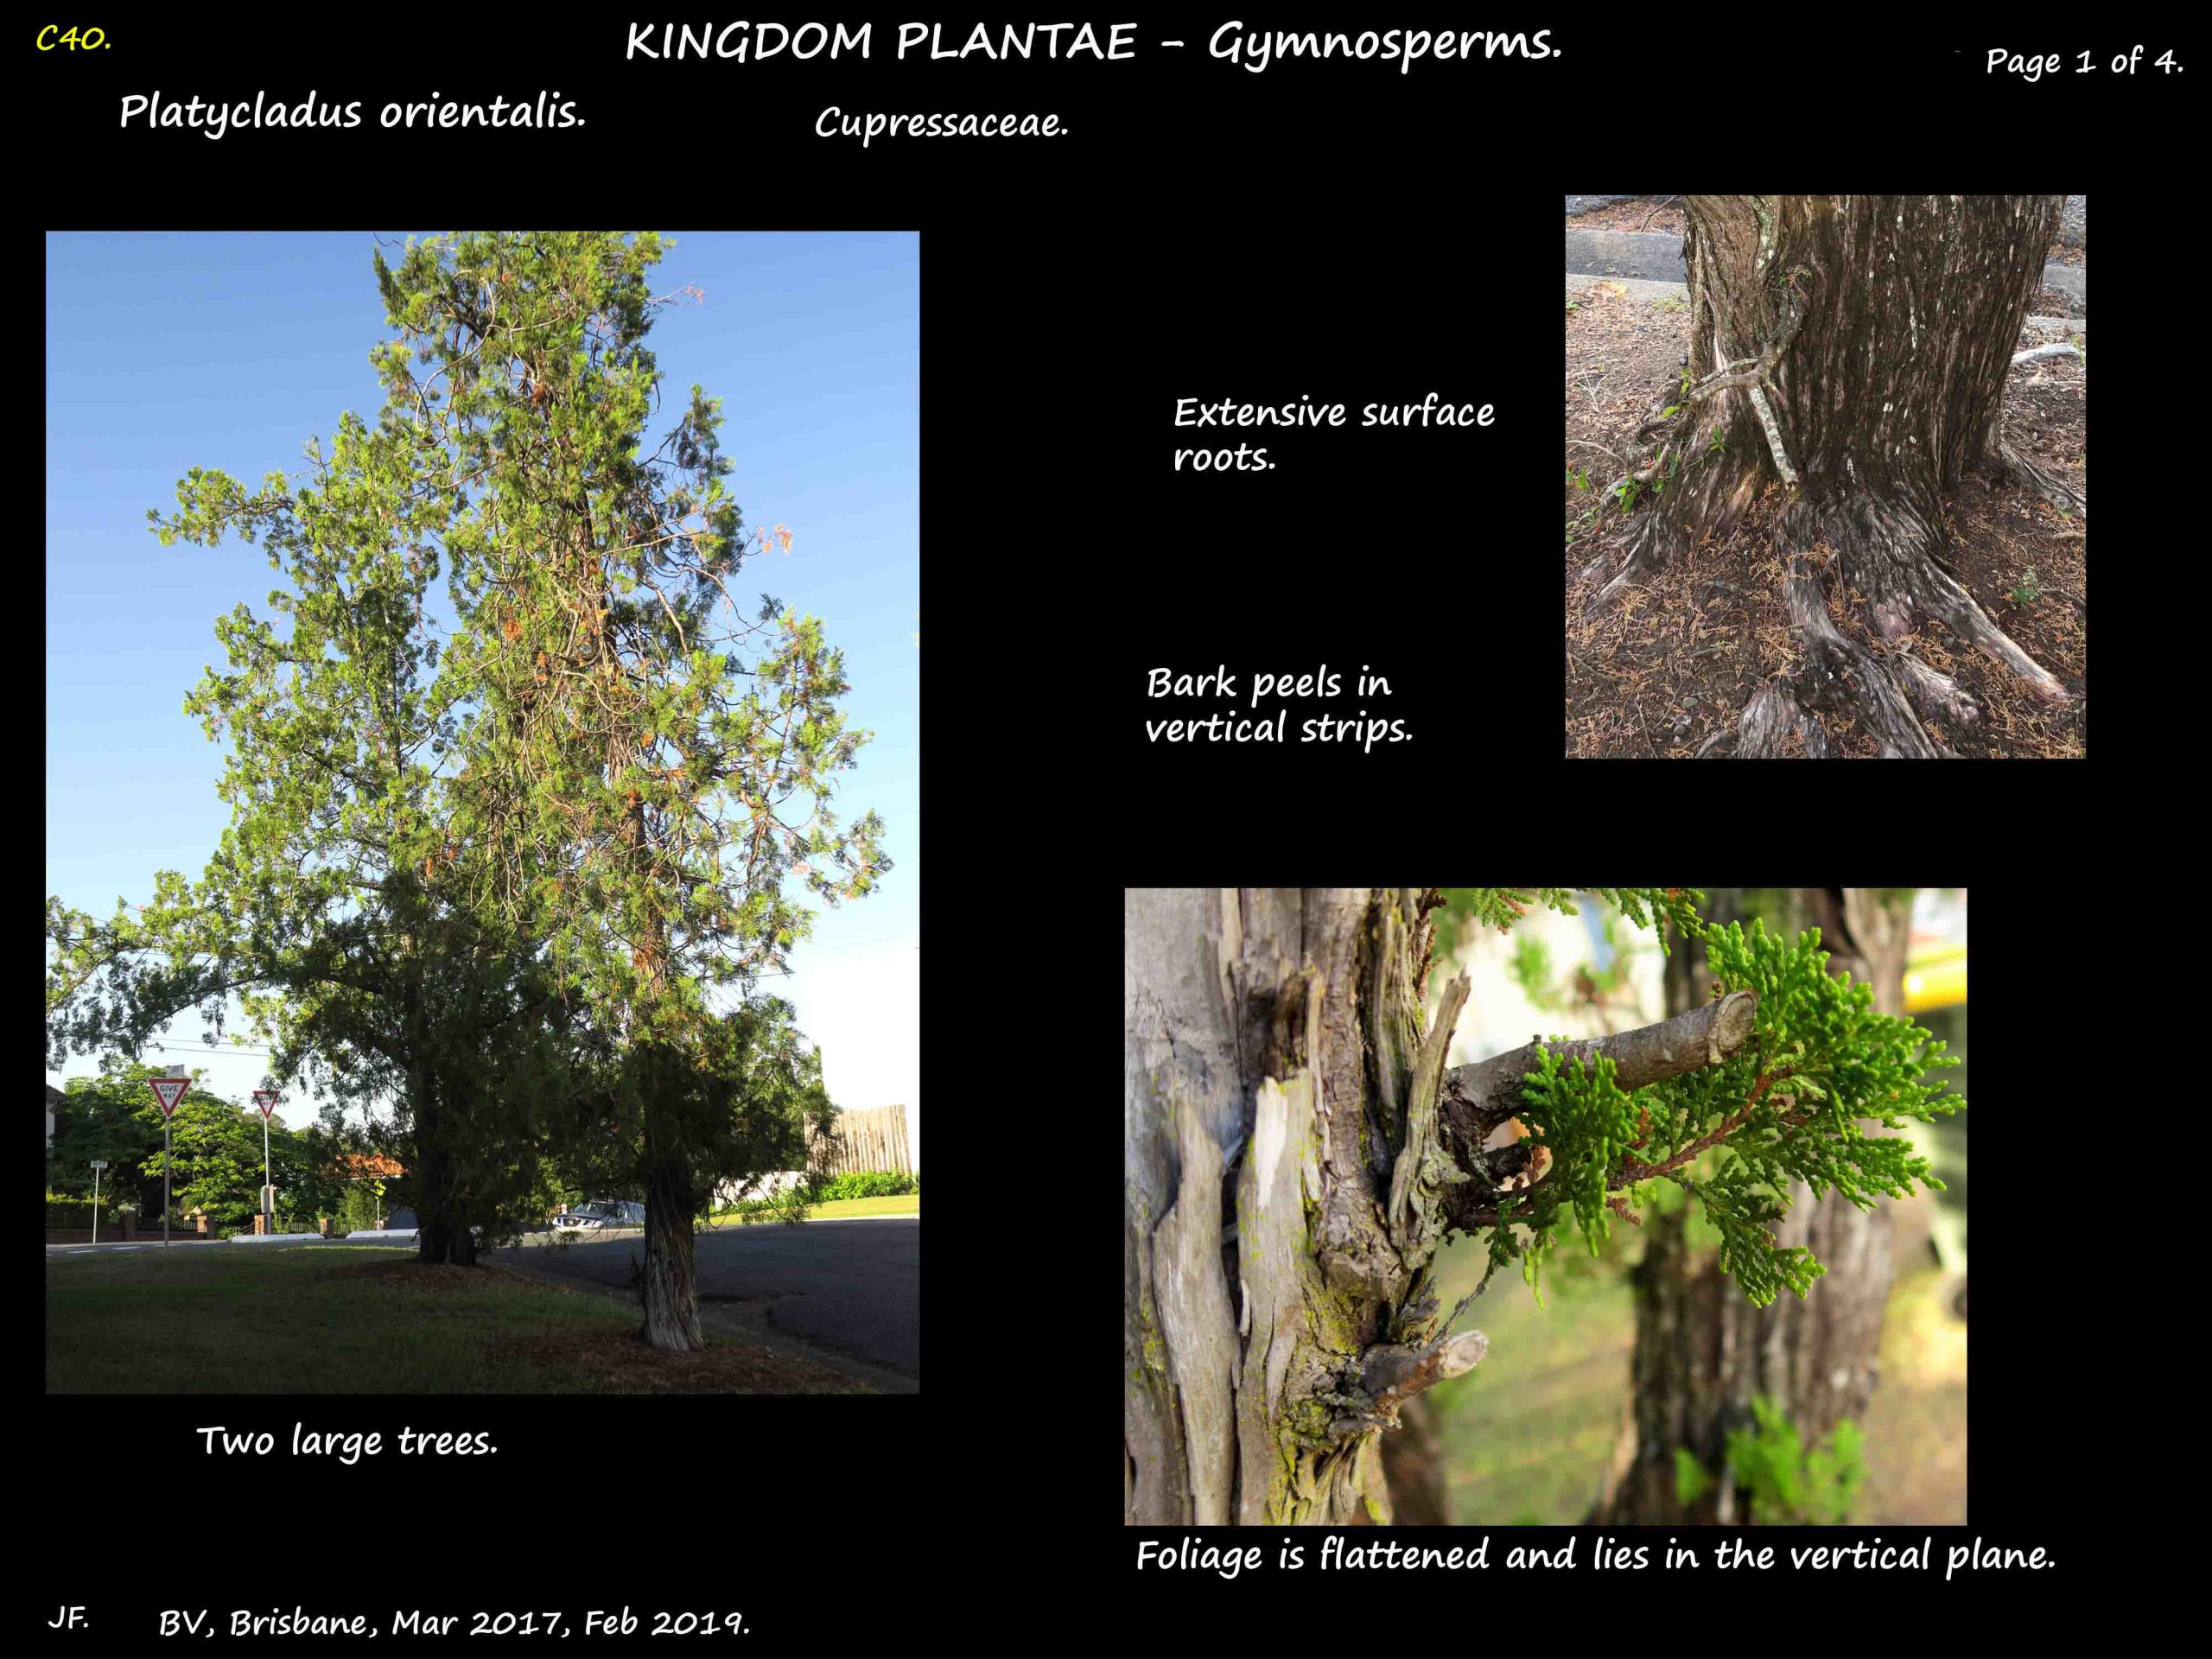 1 Platycladus orientalis tree & bark